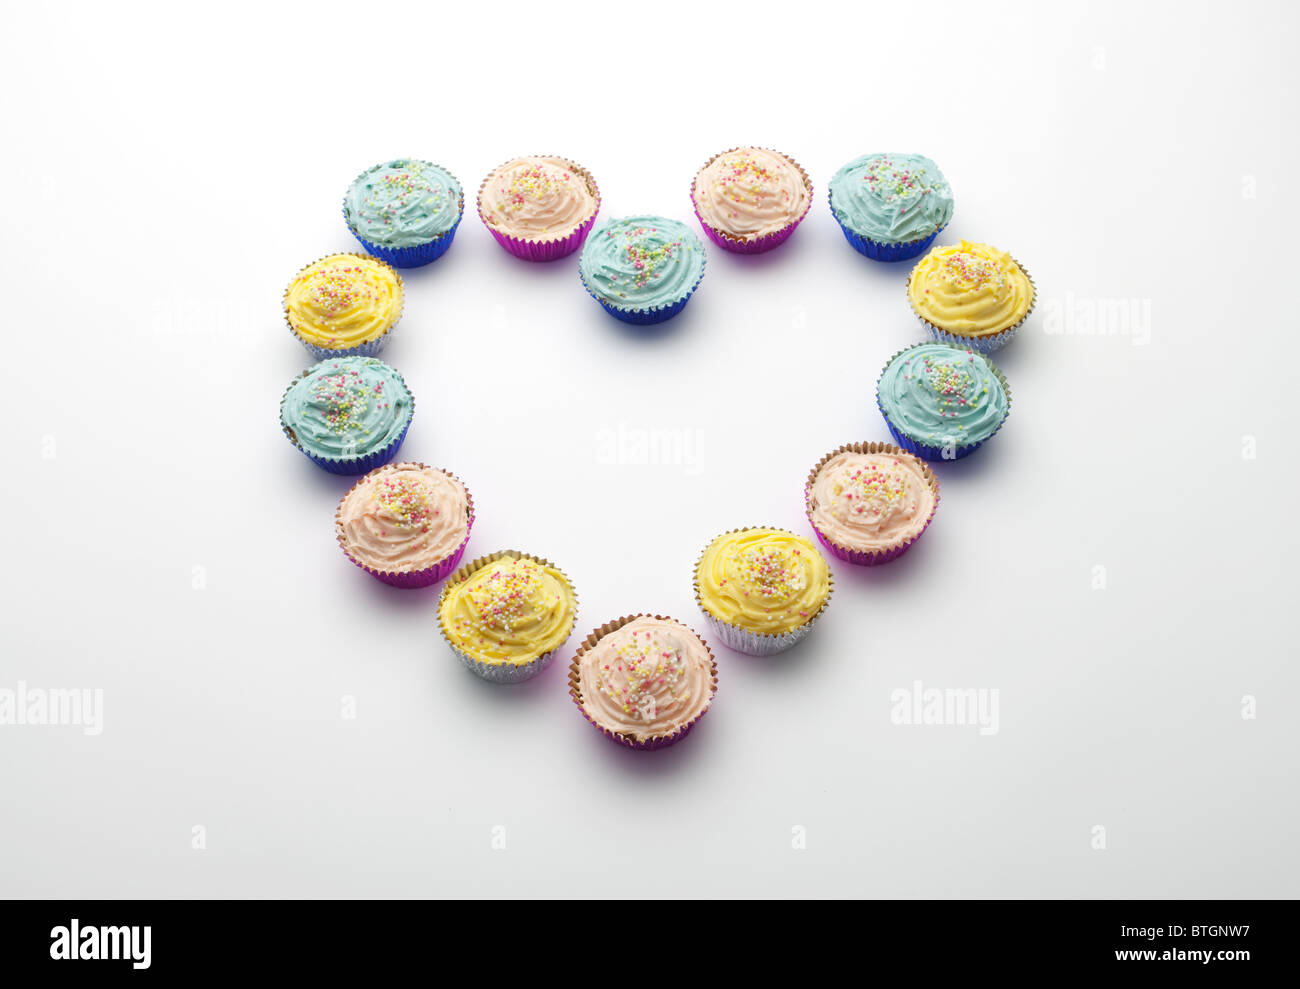 Cupcakes disposés en forme de coeur Banque D'Images